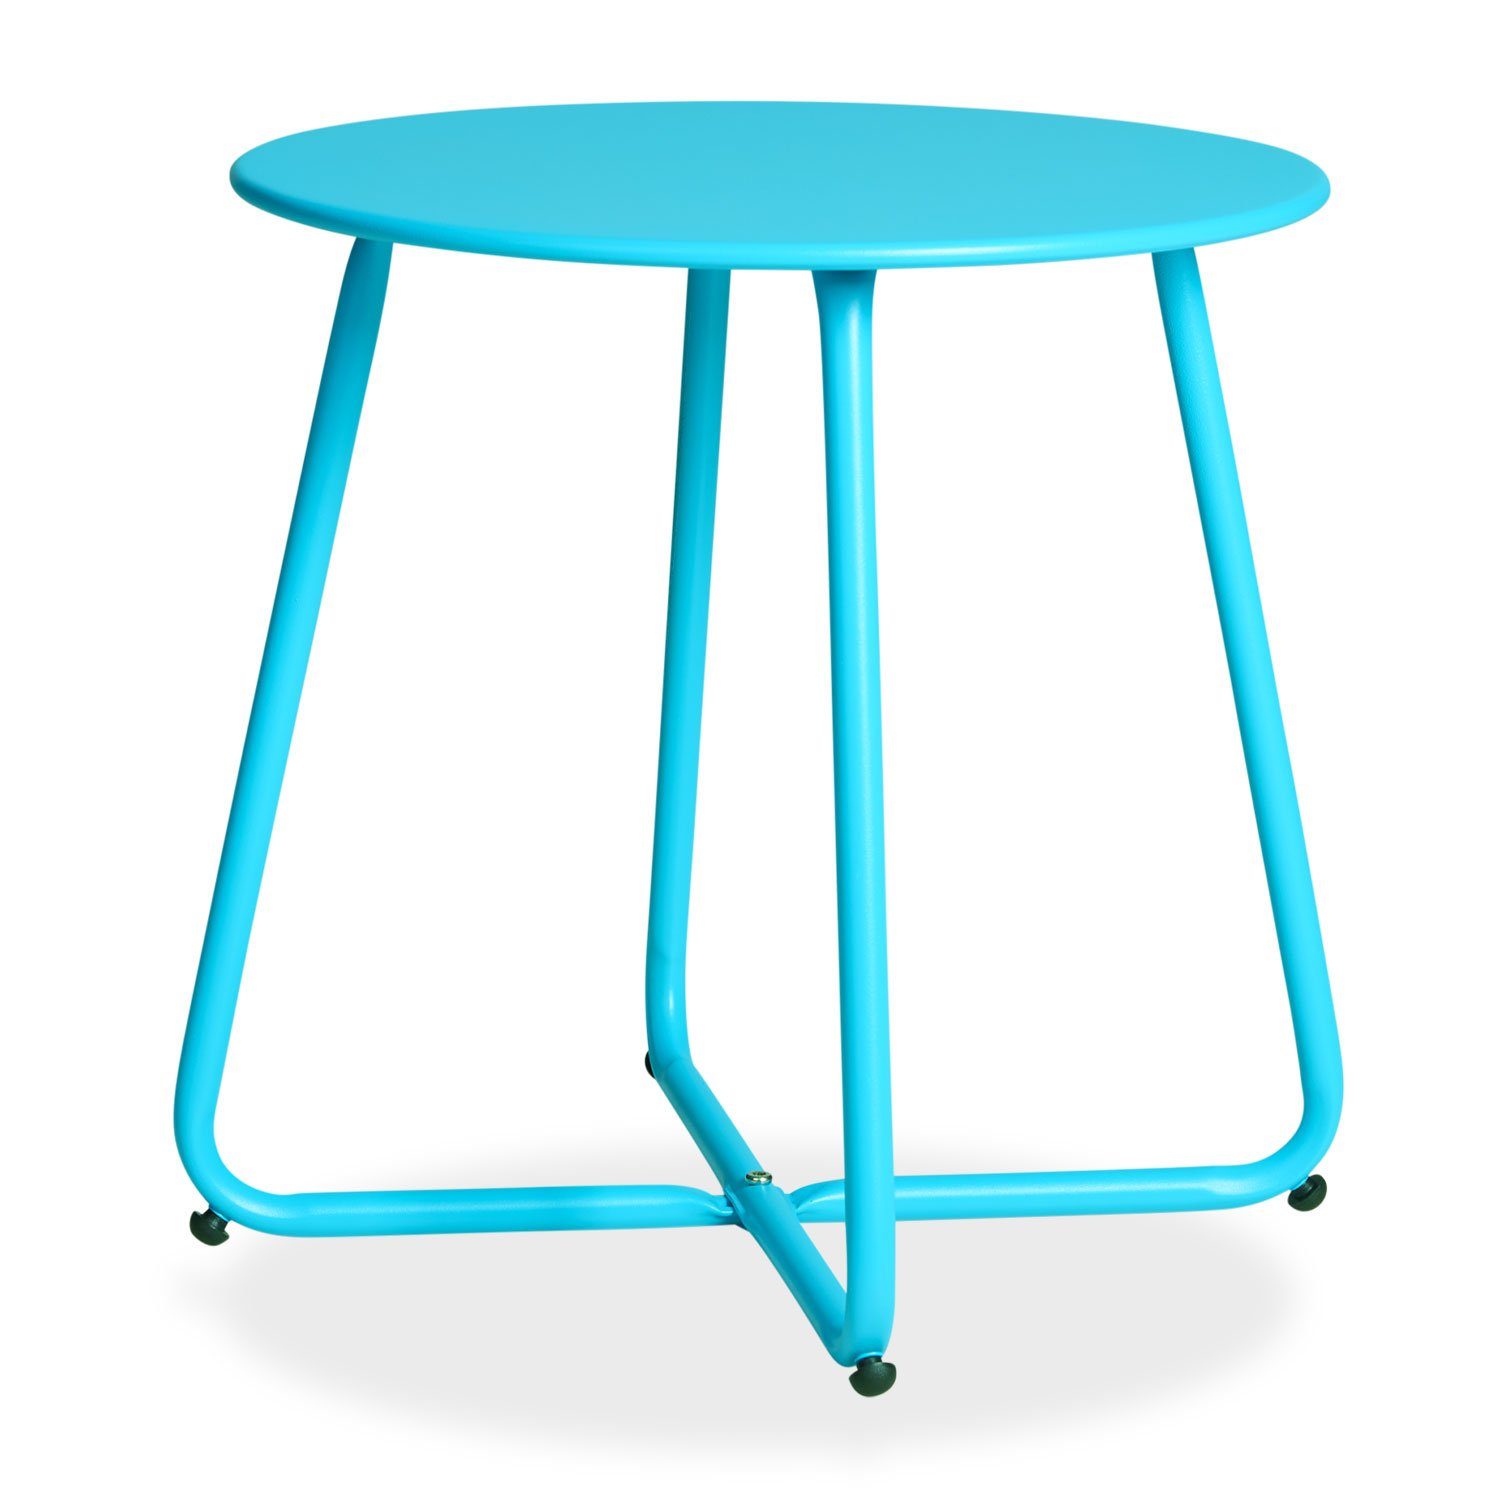 Homestyle4u Beistelltisch Gartentisch Rund Metall Balkontisch Tisch Kaffeetisch 45cm Durchmesser, Blau